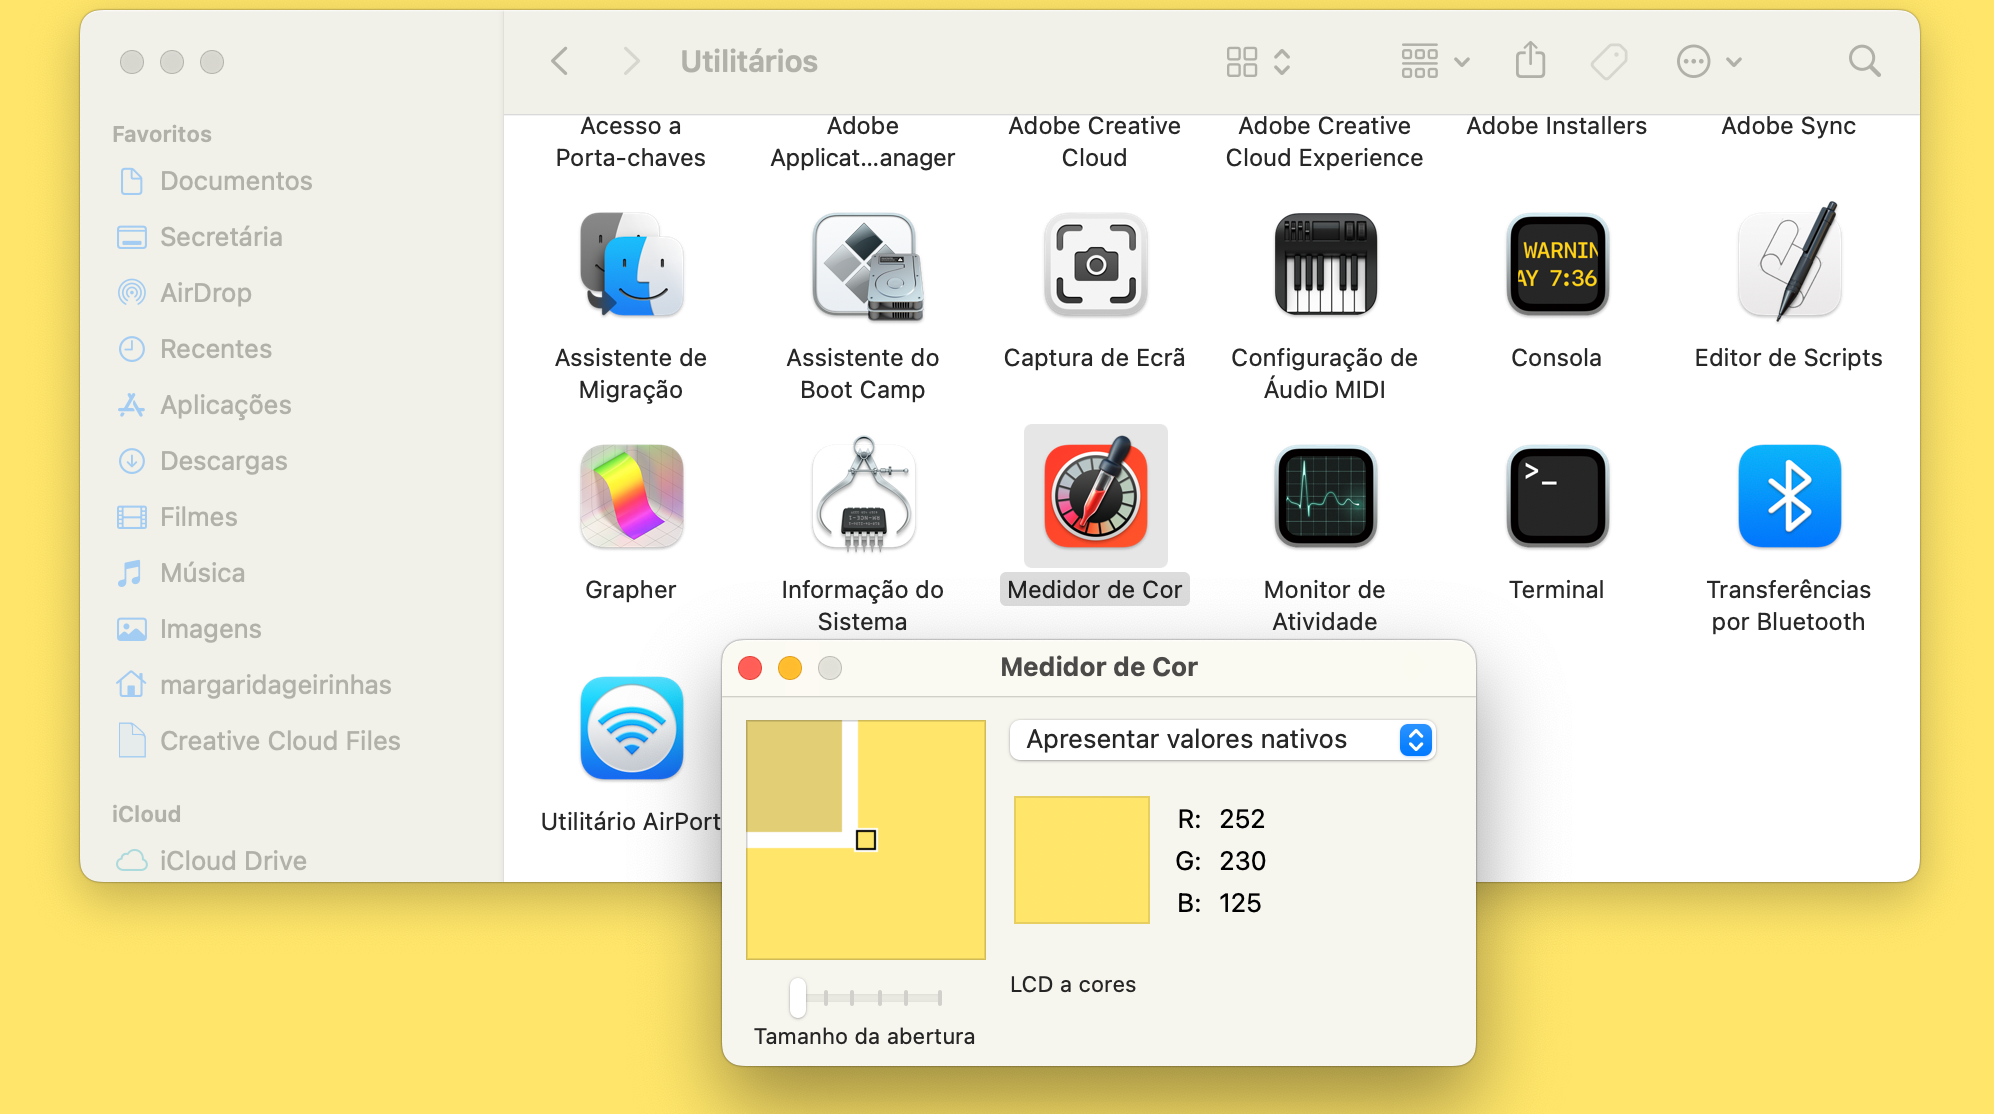 Captura de ecrã da pasta de Utilitários e do Medidor de Cor no Mac.